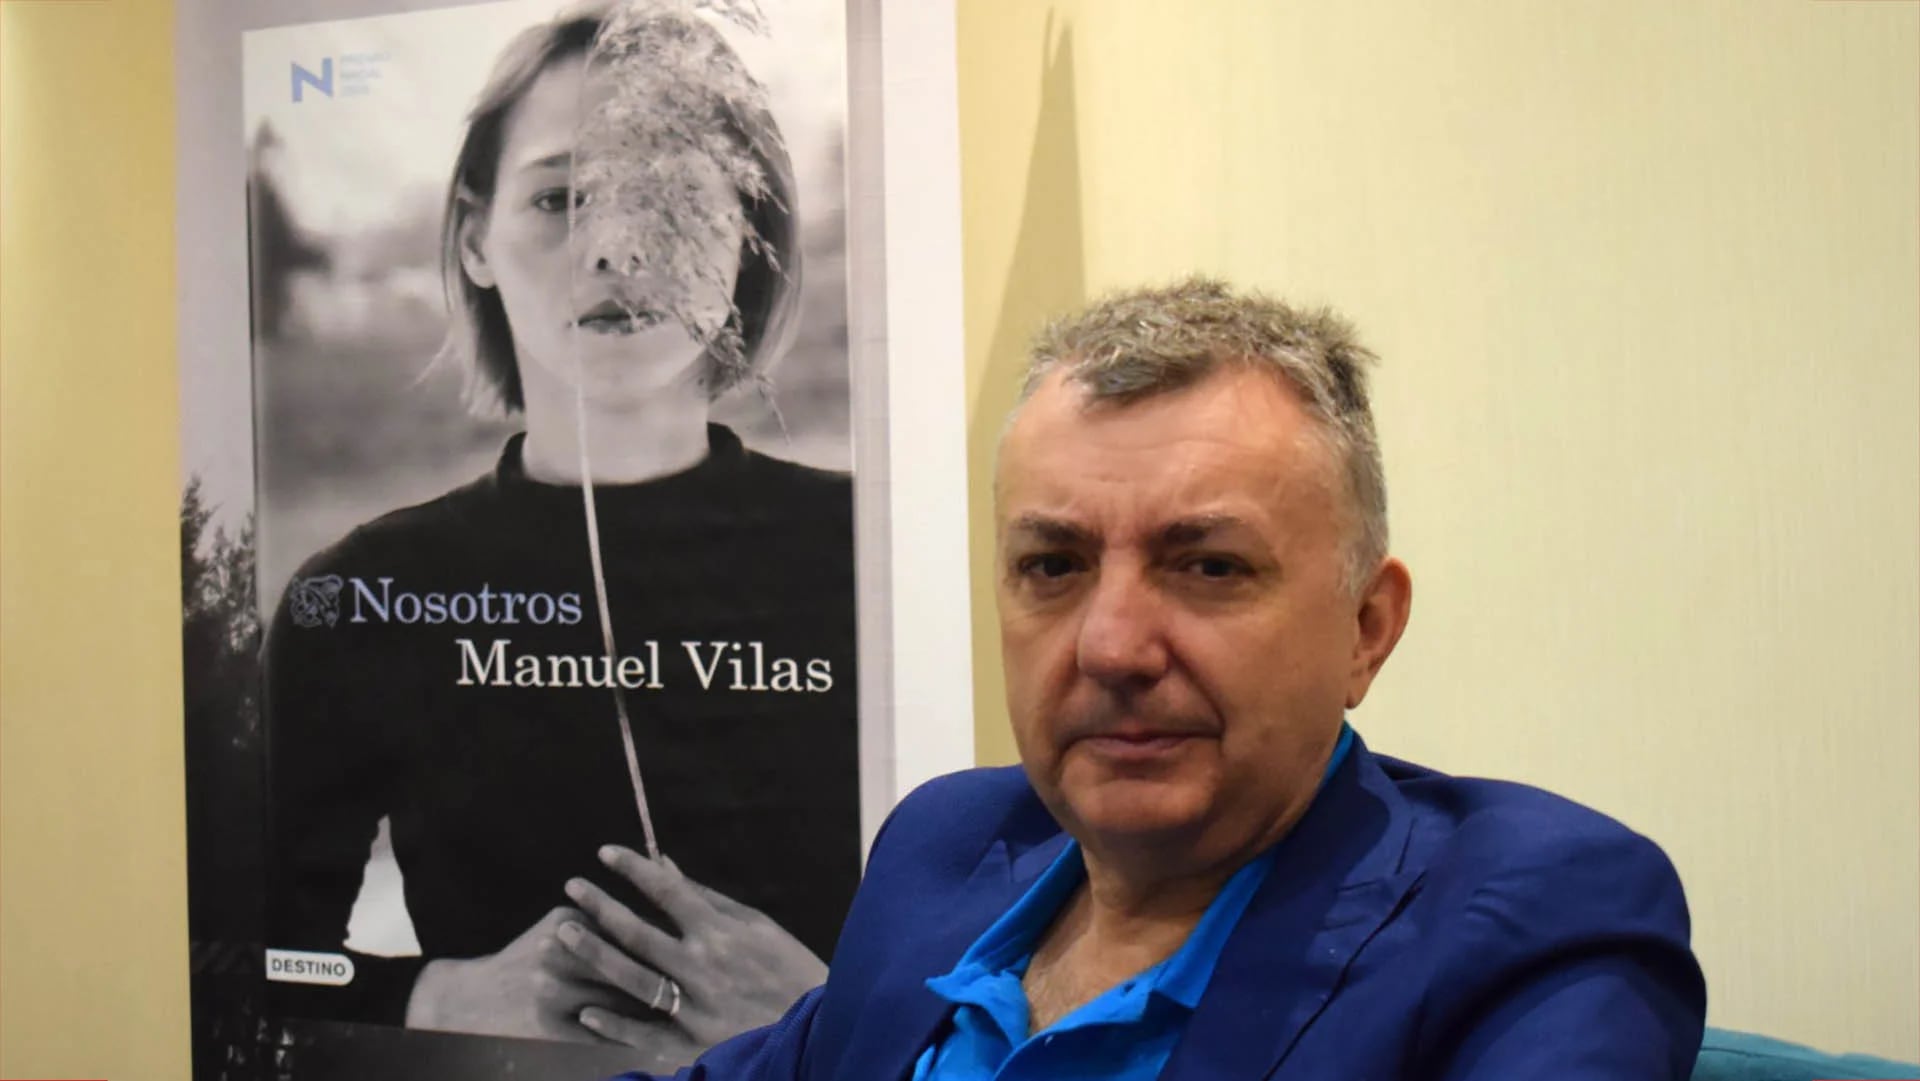 “La descripción más precisa de cualquier cosa, es decir cuánto vale”: Manuel Vilas habla sobre la presencia del capitalismo en el amor